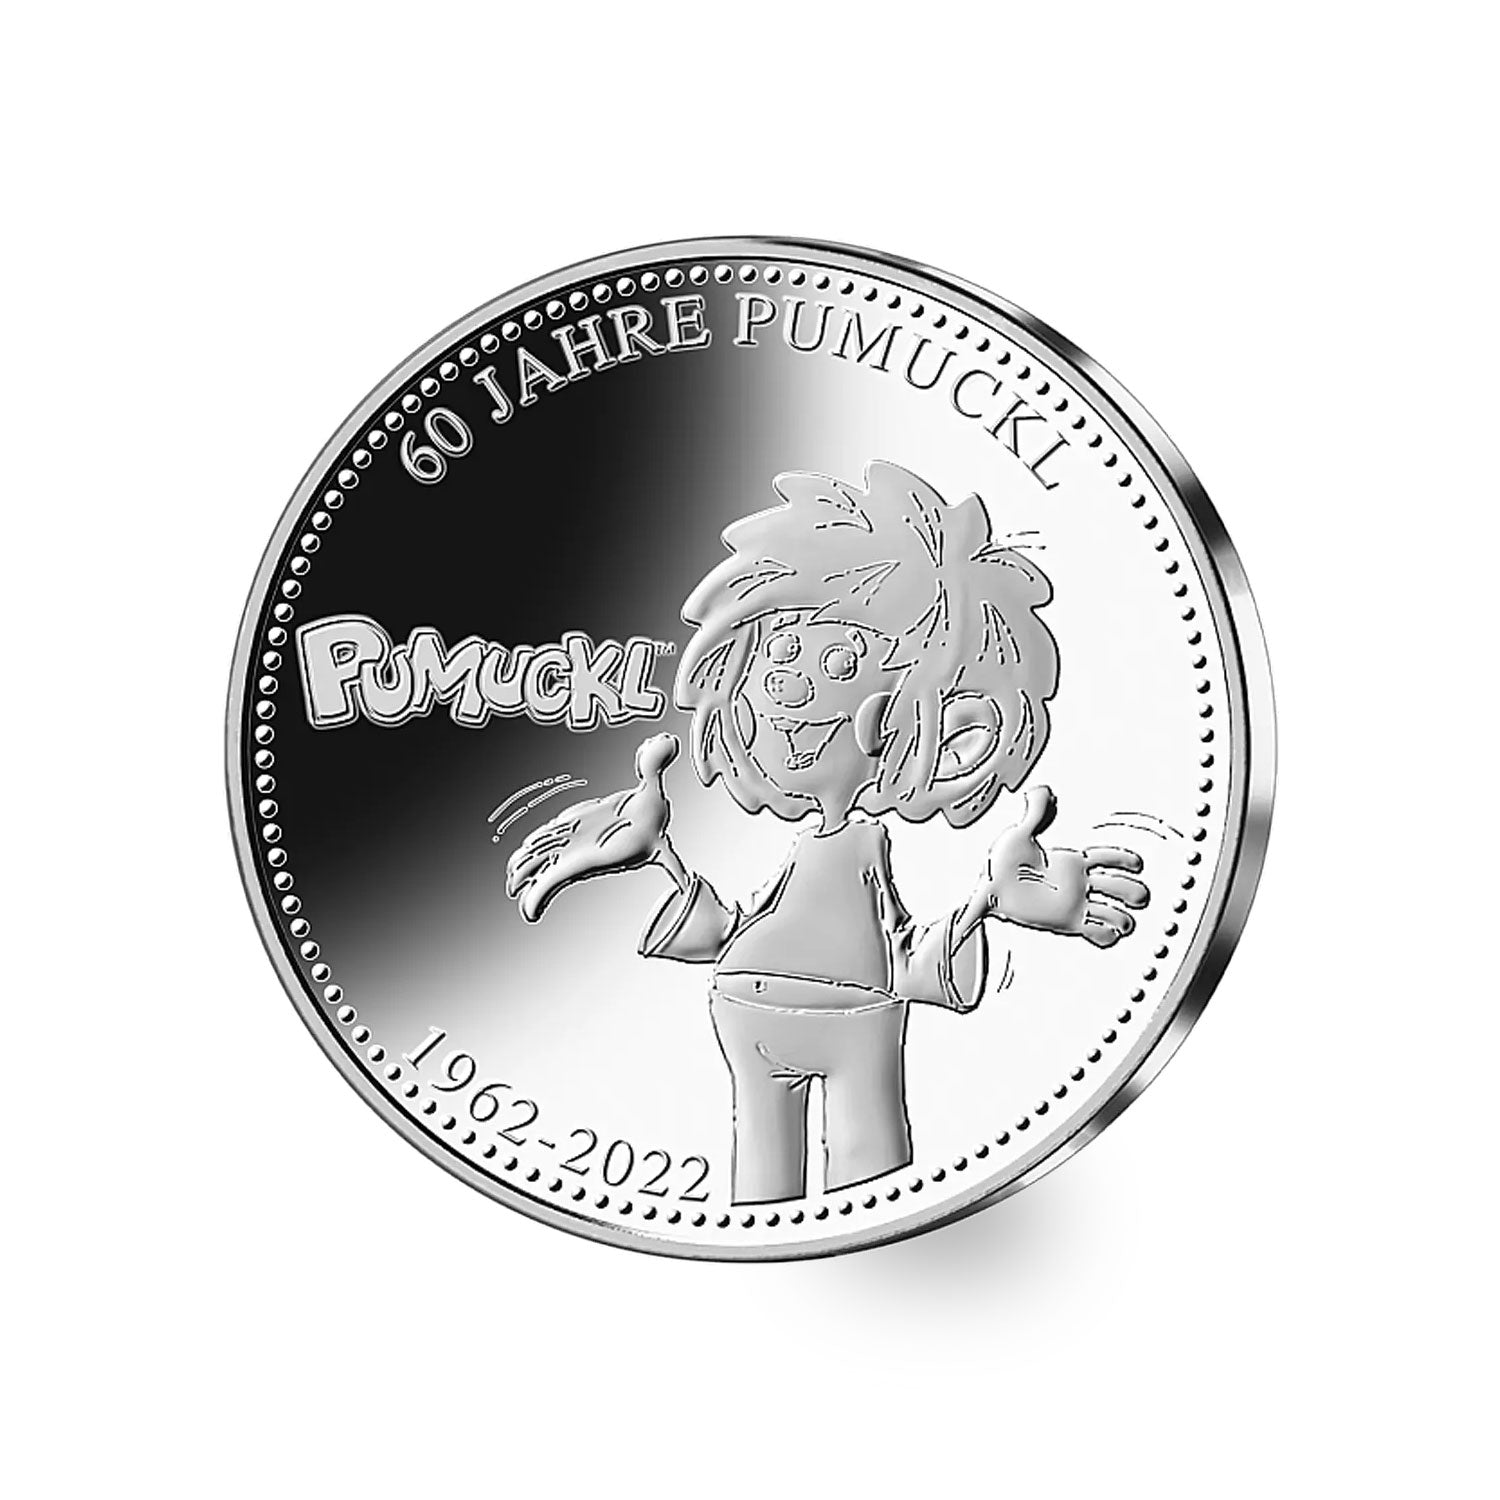 ®Pumuckl Sammler Münze "60 Jahre Pumuckl"